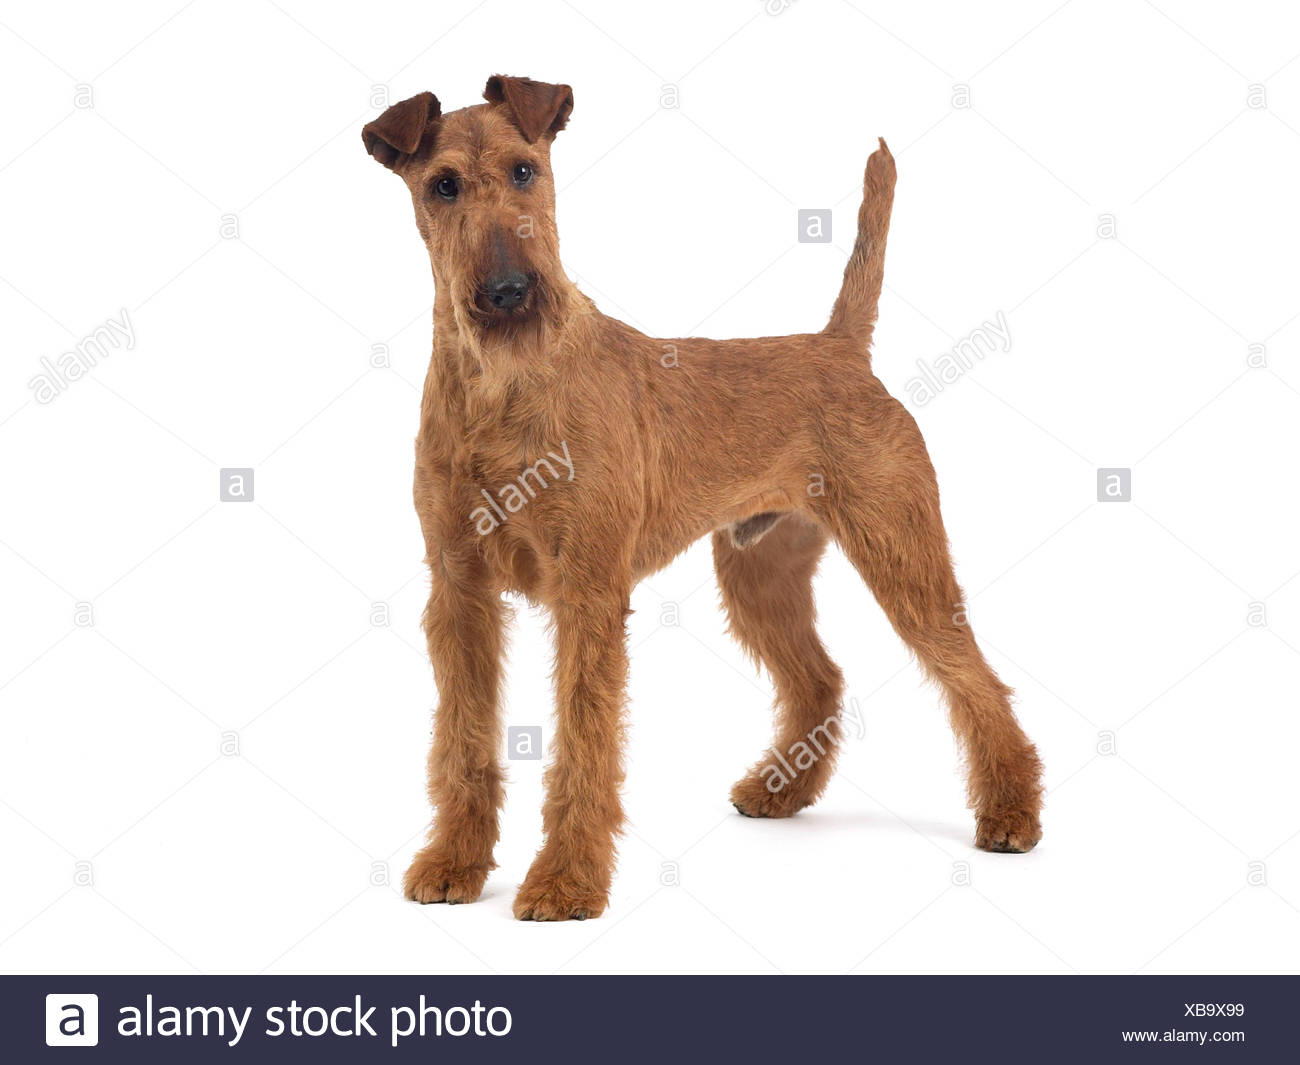 Irish Terrier Grooming Chart